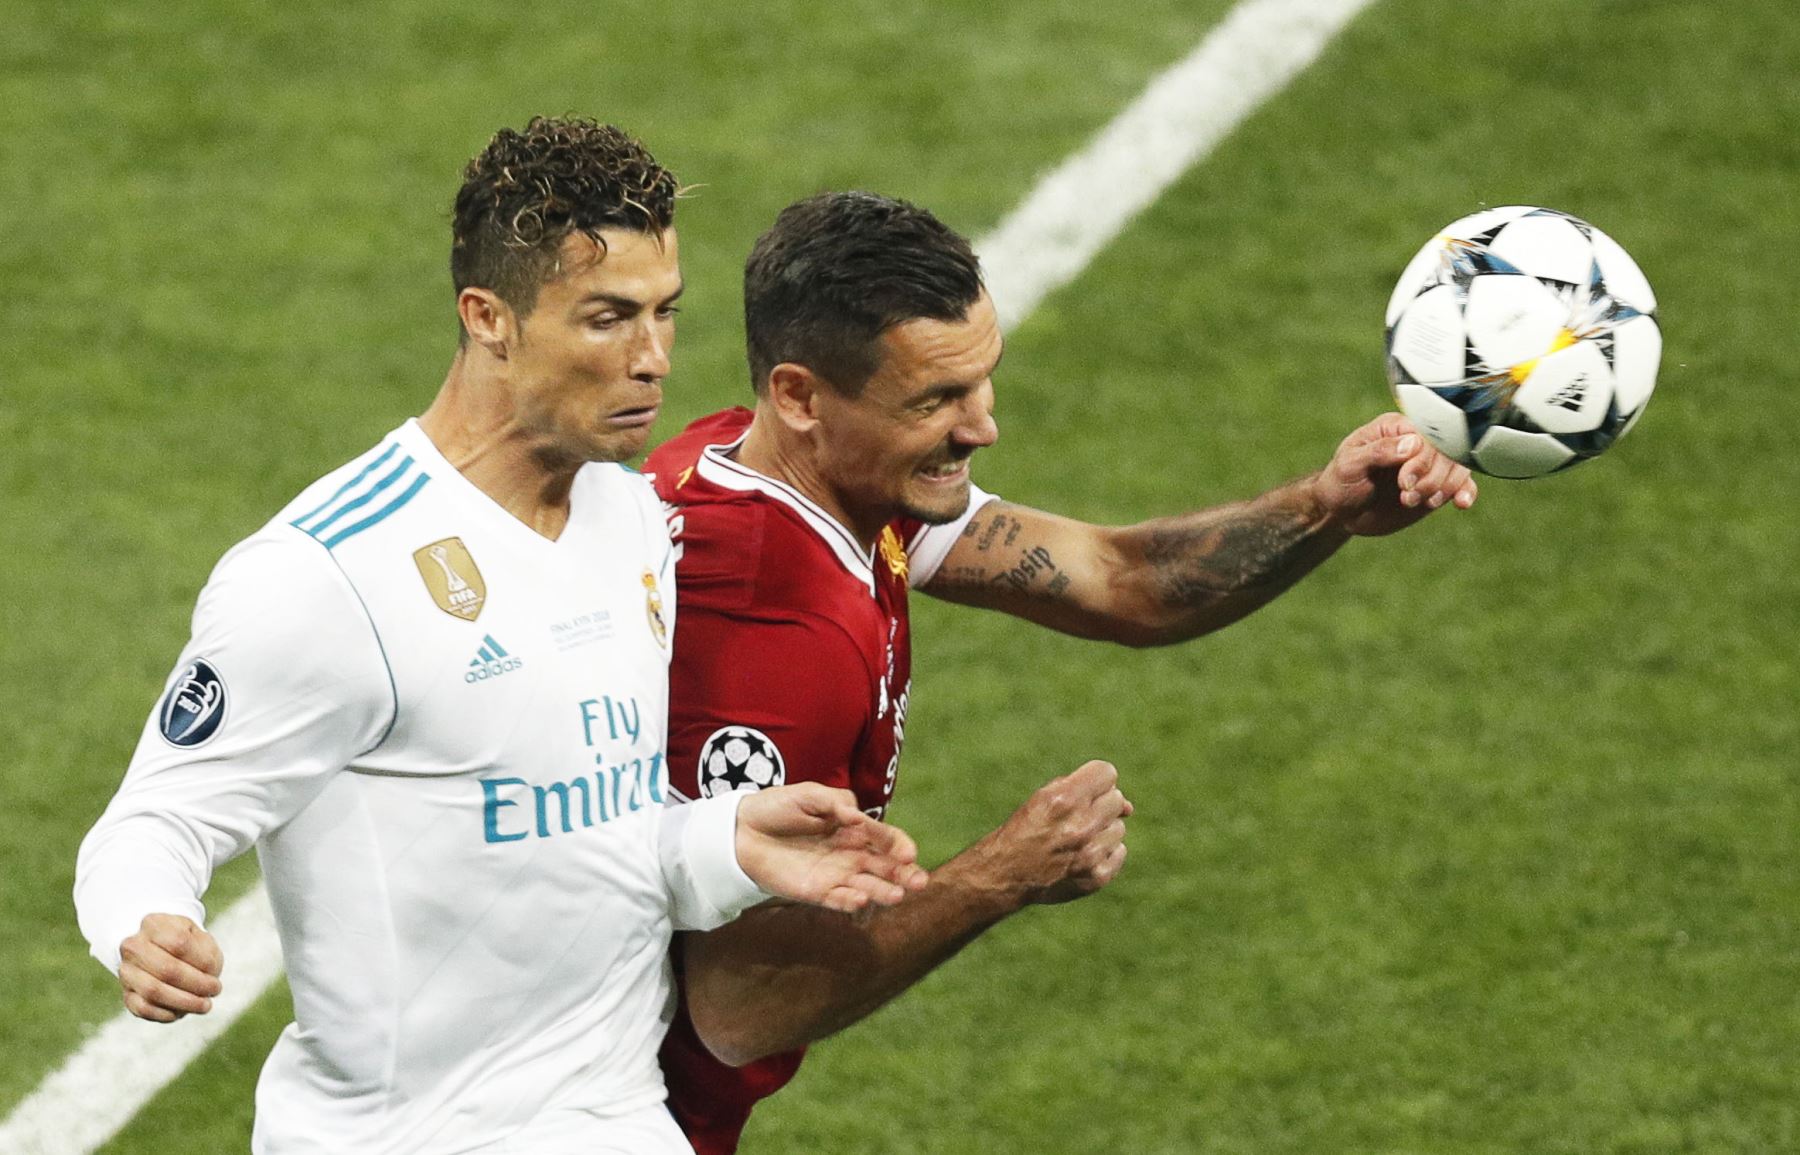 Real Madrid Cristiano Ronaldo en acción contra Dejan Lovren del Liverpool durante la final de la UEFA Champions League entre Real Madrid y Liverpool FC.Foto:AFP